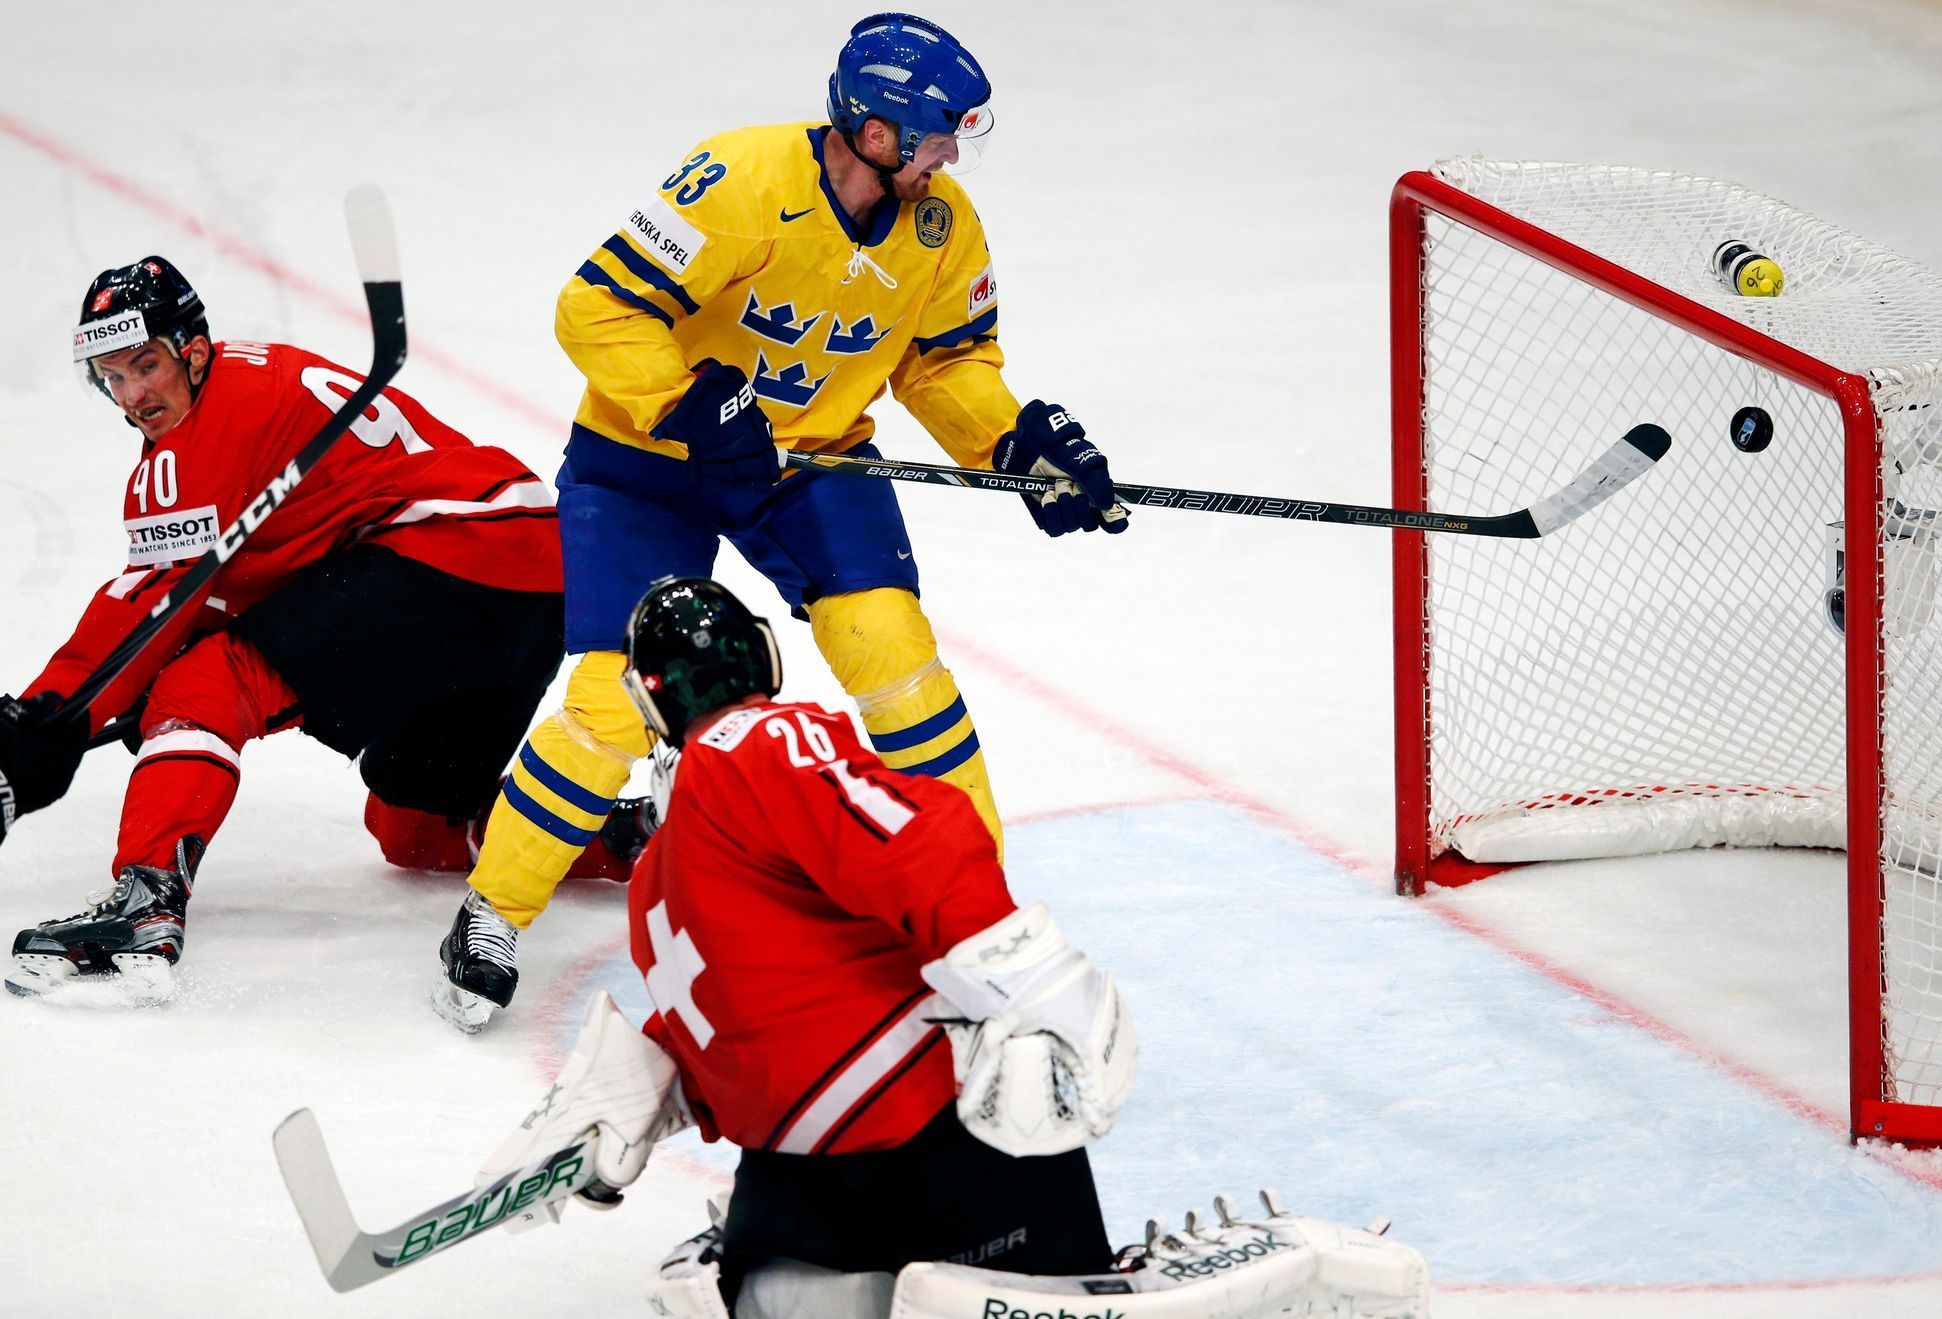 Hokej, MS 2013, Švédsko - Švýcarsko: Martin Gerber inkasuje od Henrika Sedina gól na 2:1